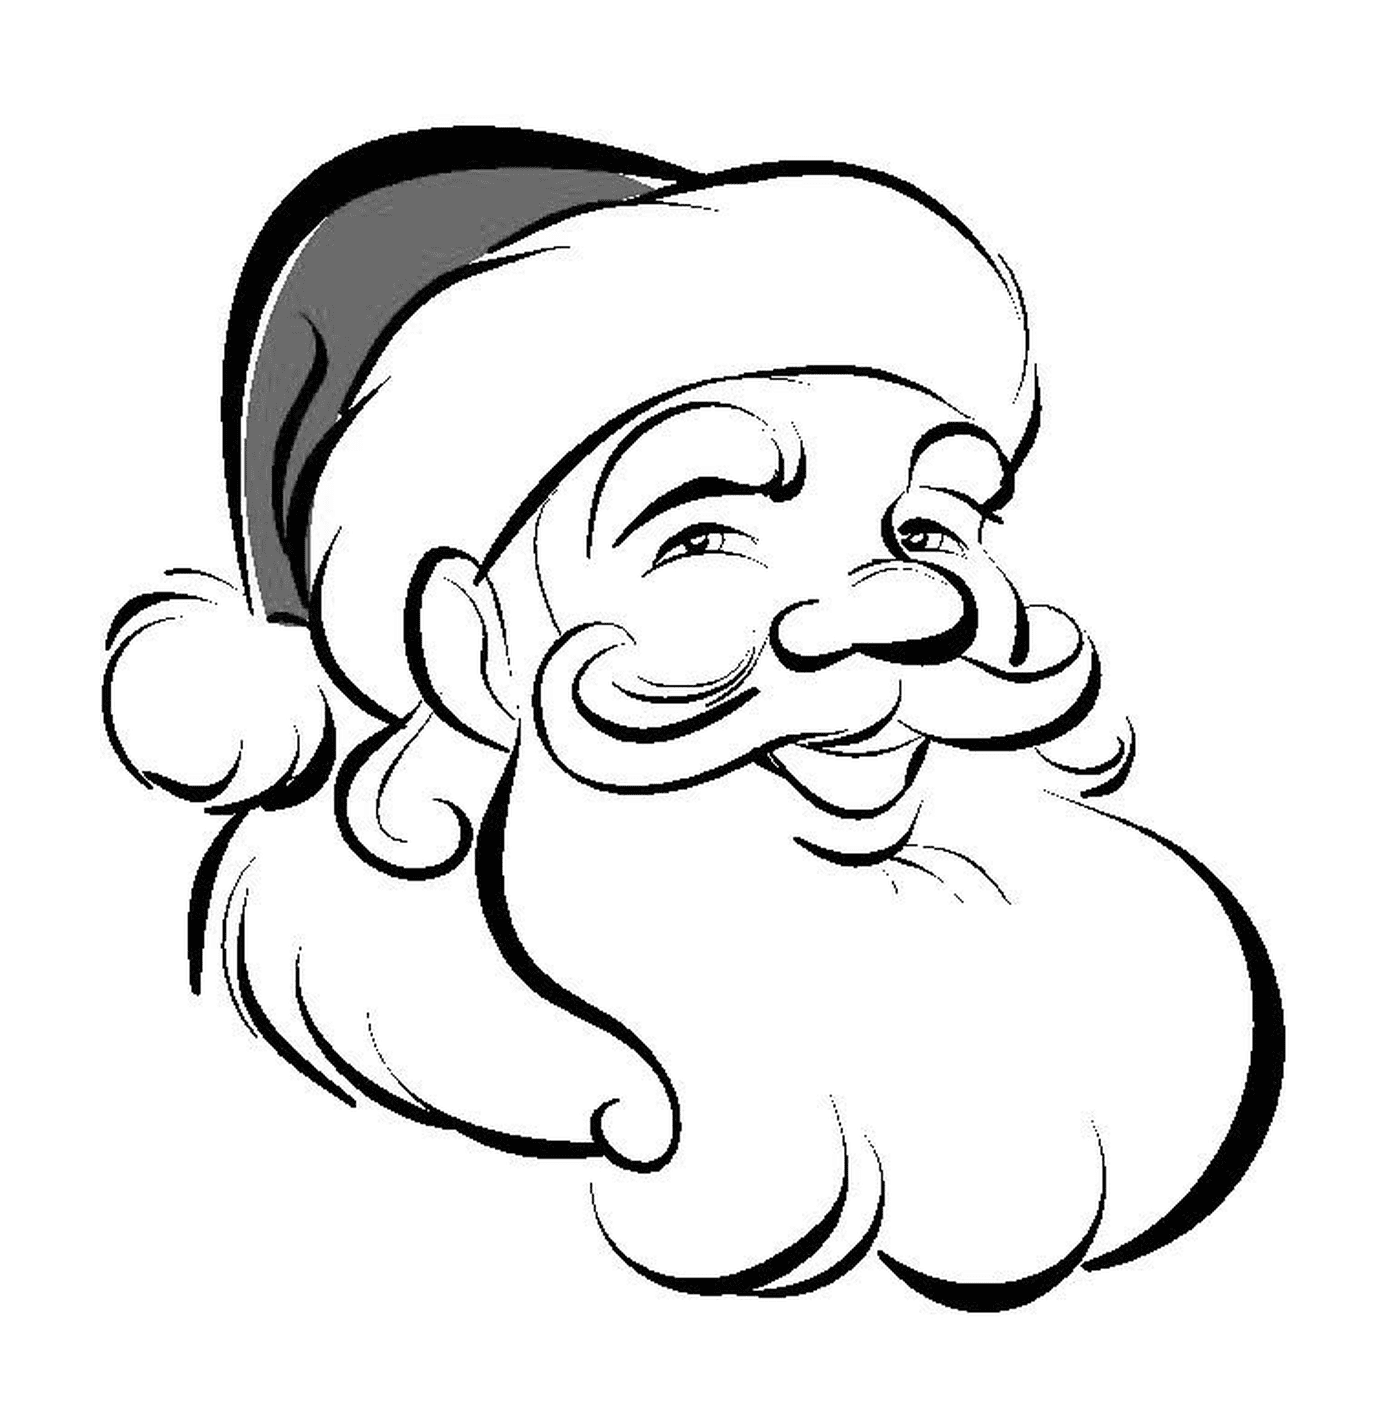  Smileing classic Santa Claus 